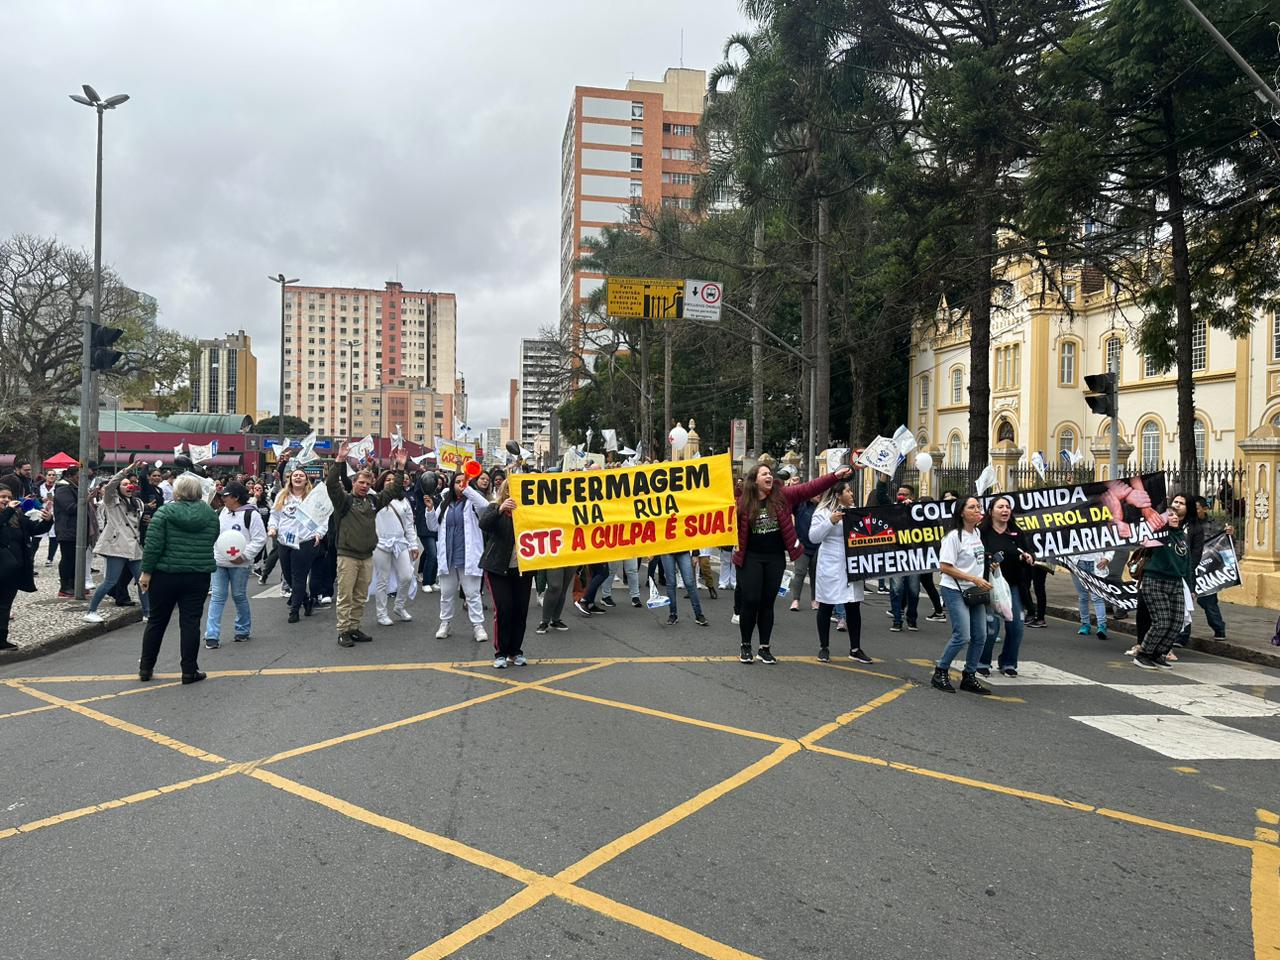 Enfermagem de Curitiba realiza manifestação nesta quinta-feira (Foto: Geovane Barreiro - Nosso Dia)